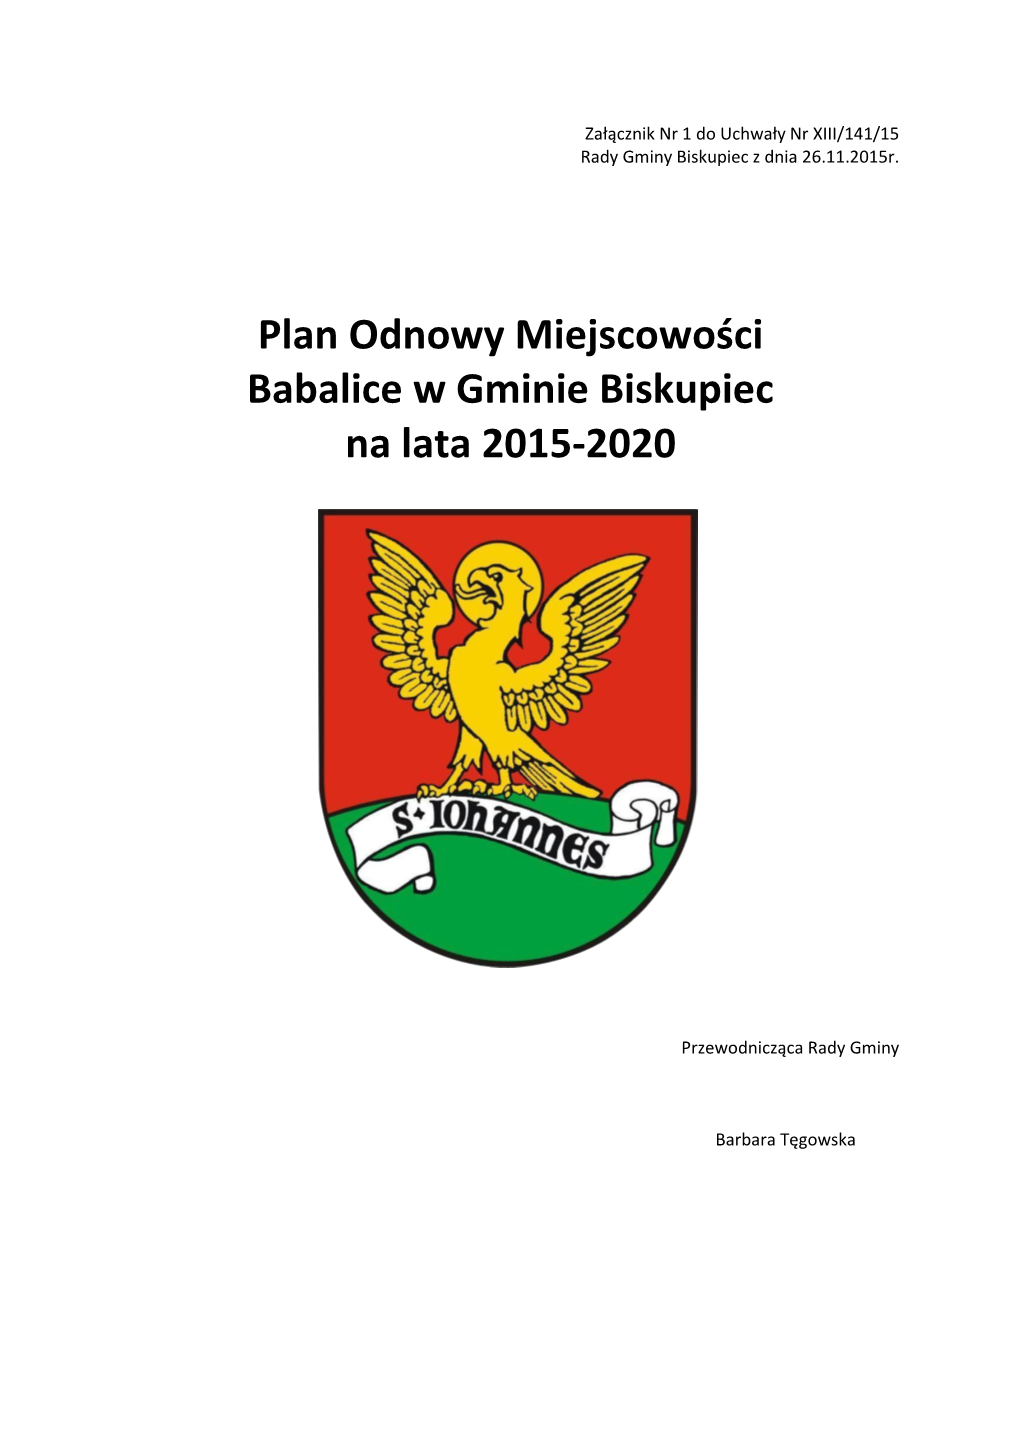 Plan Odnowy Miejscowości Babalice W Gminie Biskupiec Na Lata 2015-2020